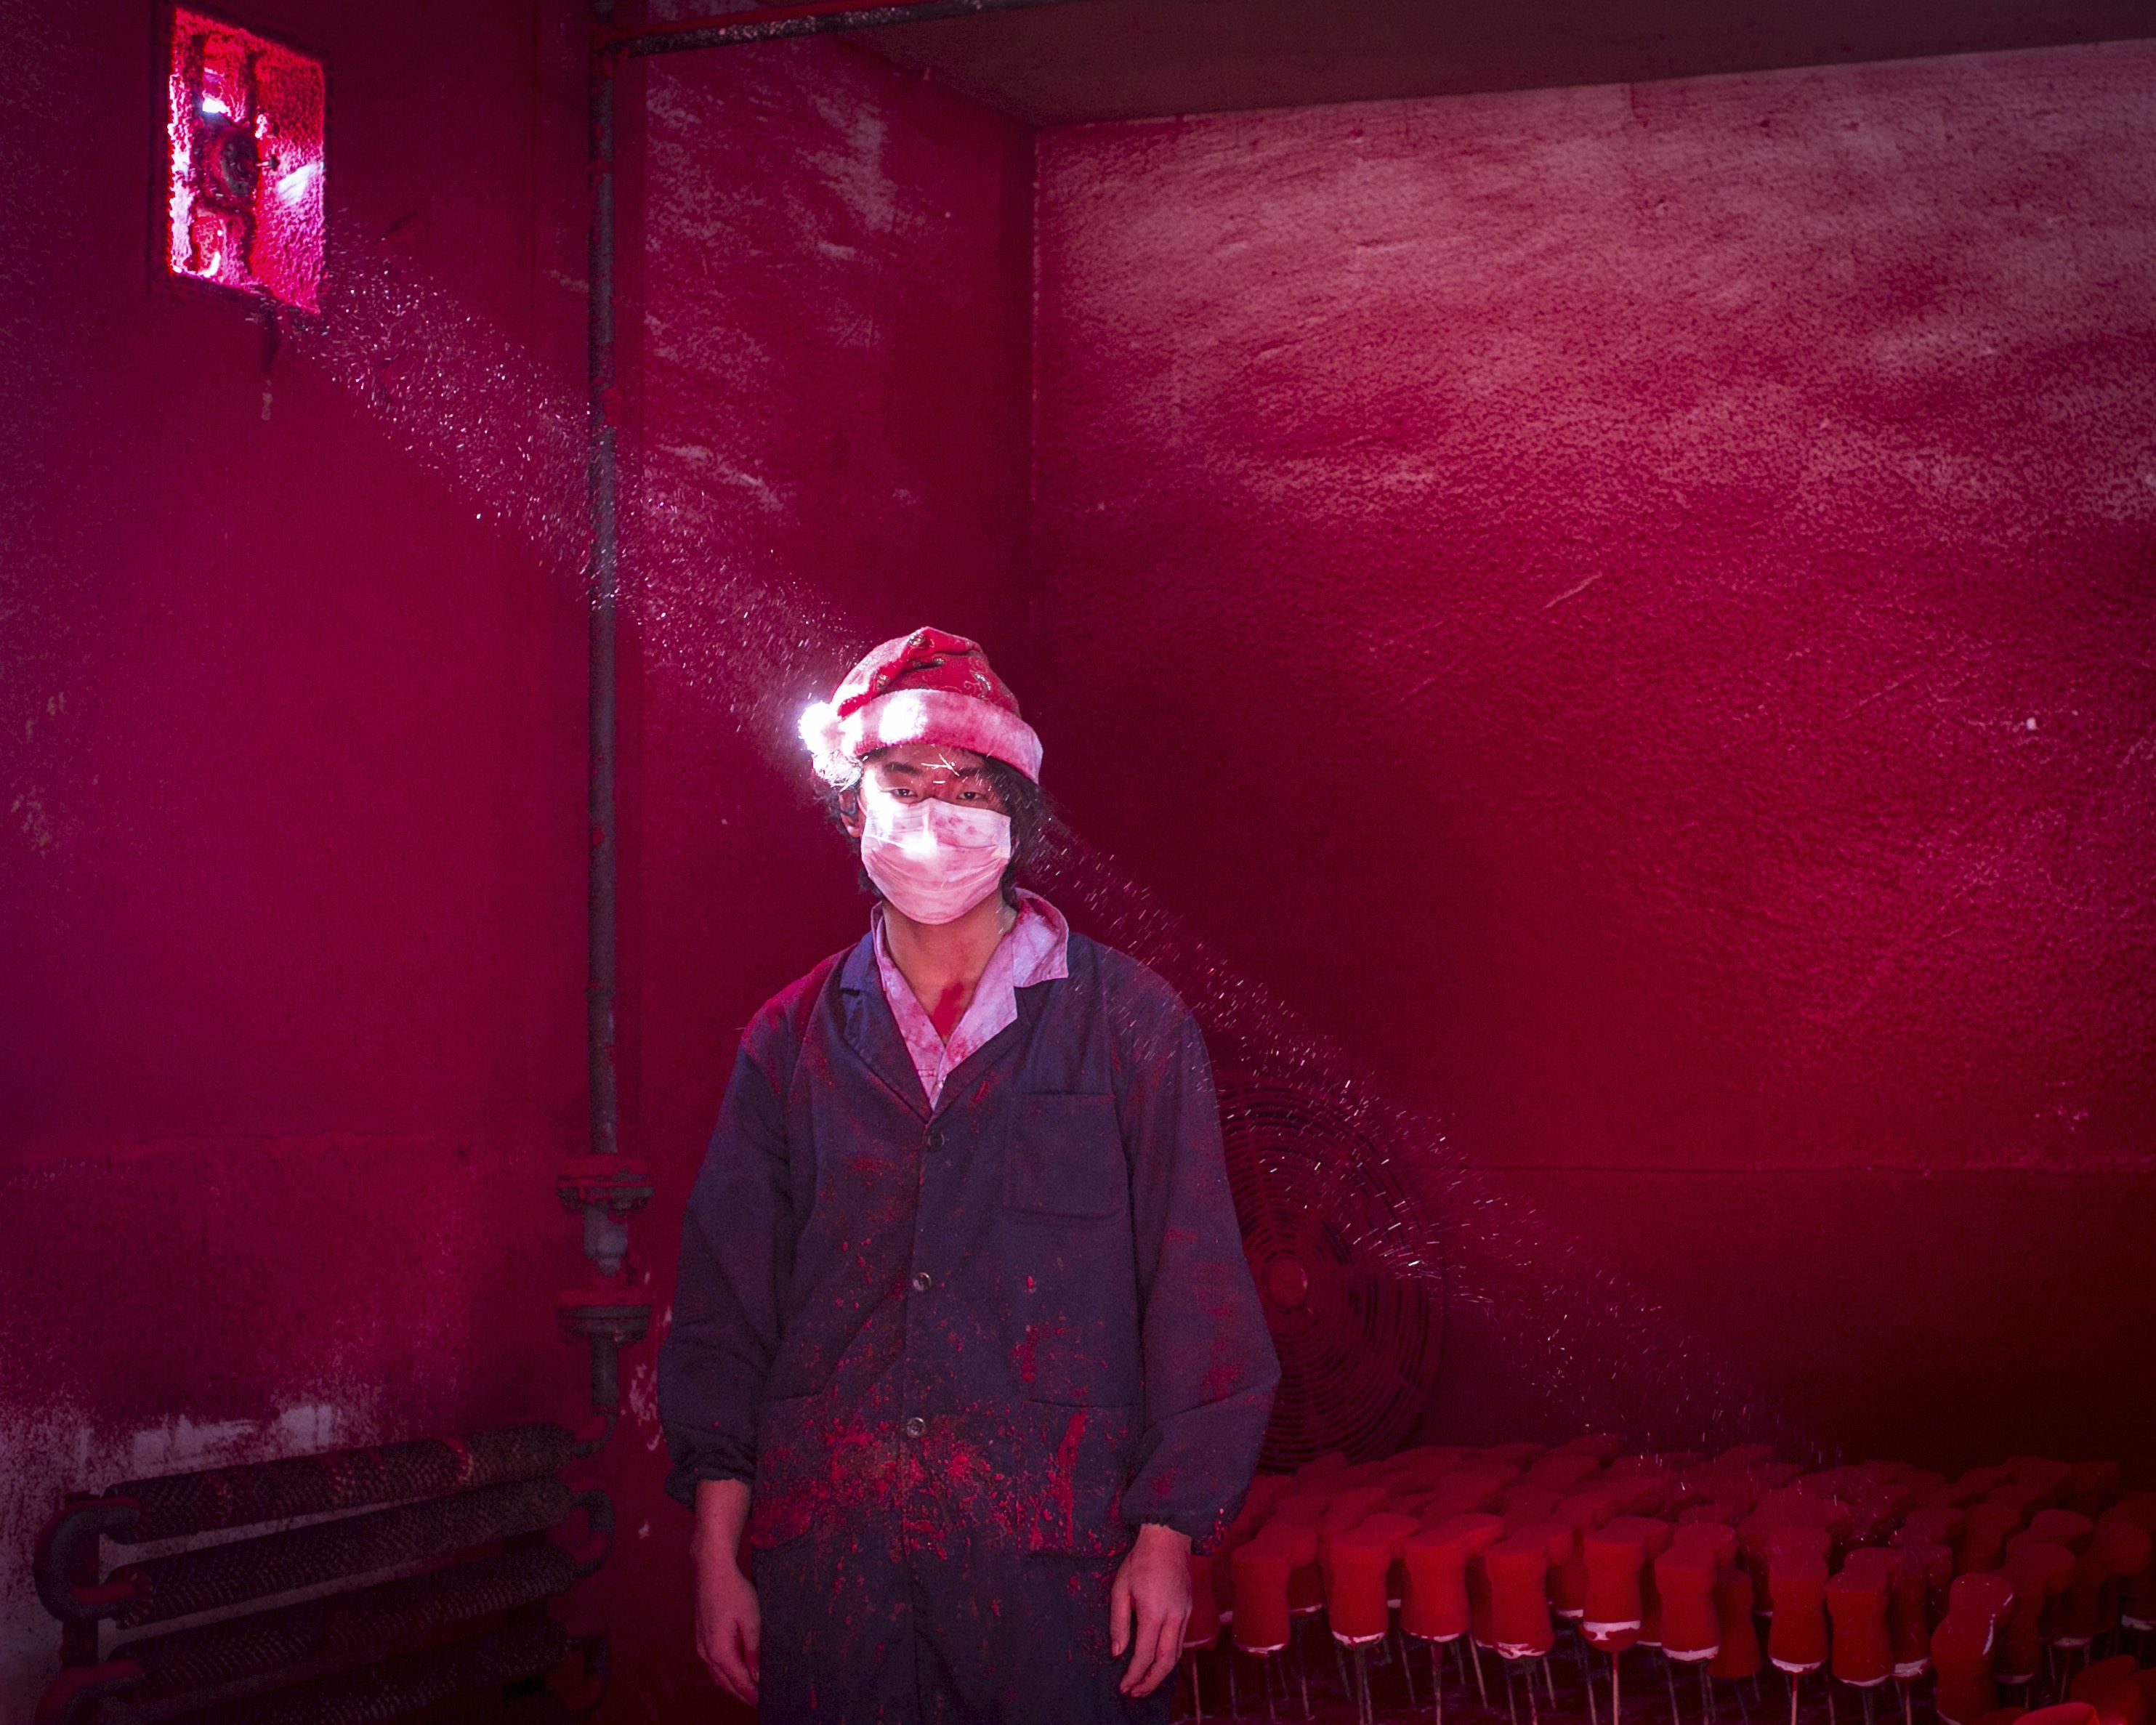 Rongui Chen | Φωτογραφία 19χρονου Κινέζου εργάτη με μάσκα στο πρόσωπο και σκούφο του Άγιου Βασίλη ενώ στέκεται δίπλα σε χριστουγεννιάτικα στολίδια που στεγνώνουν σε εργοστάσιο και κόκκινη σκόνη που χρησιμοποιήθηκε για τον χρωματισμό αιωρείται στον αέρα